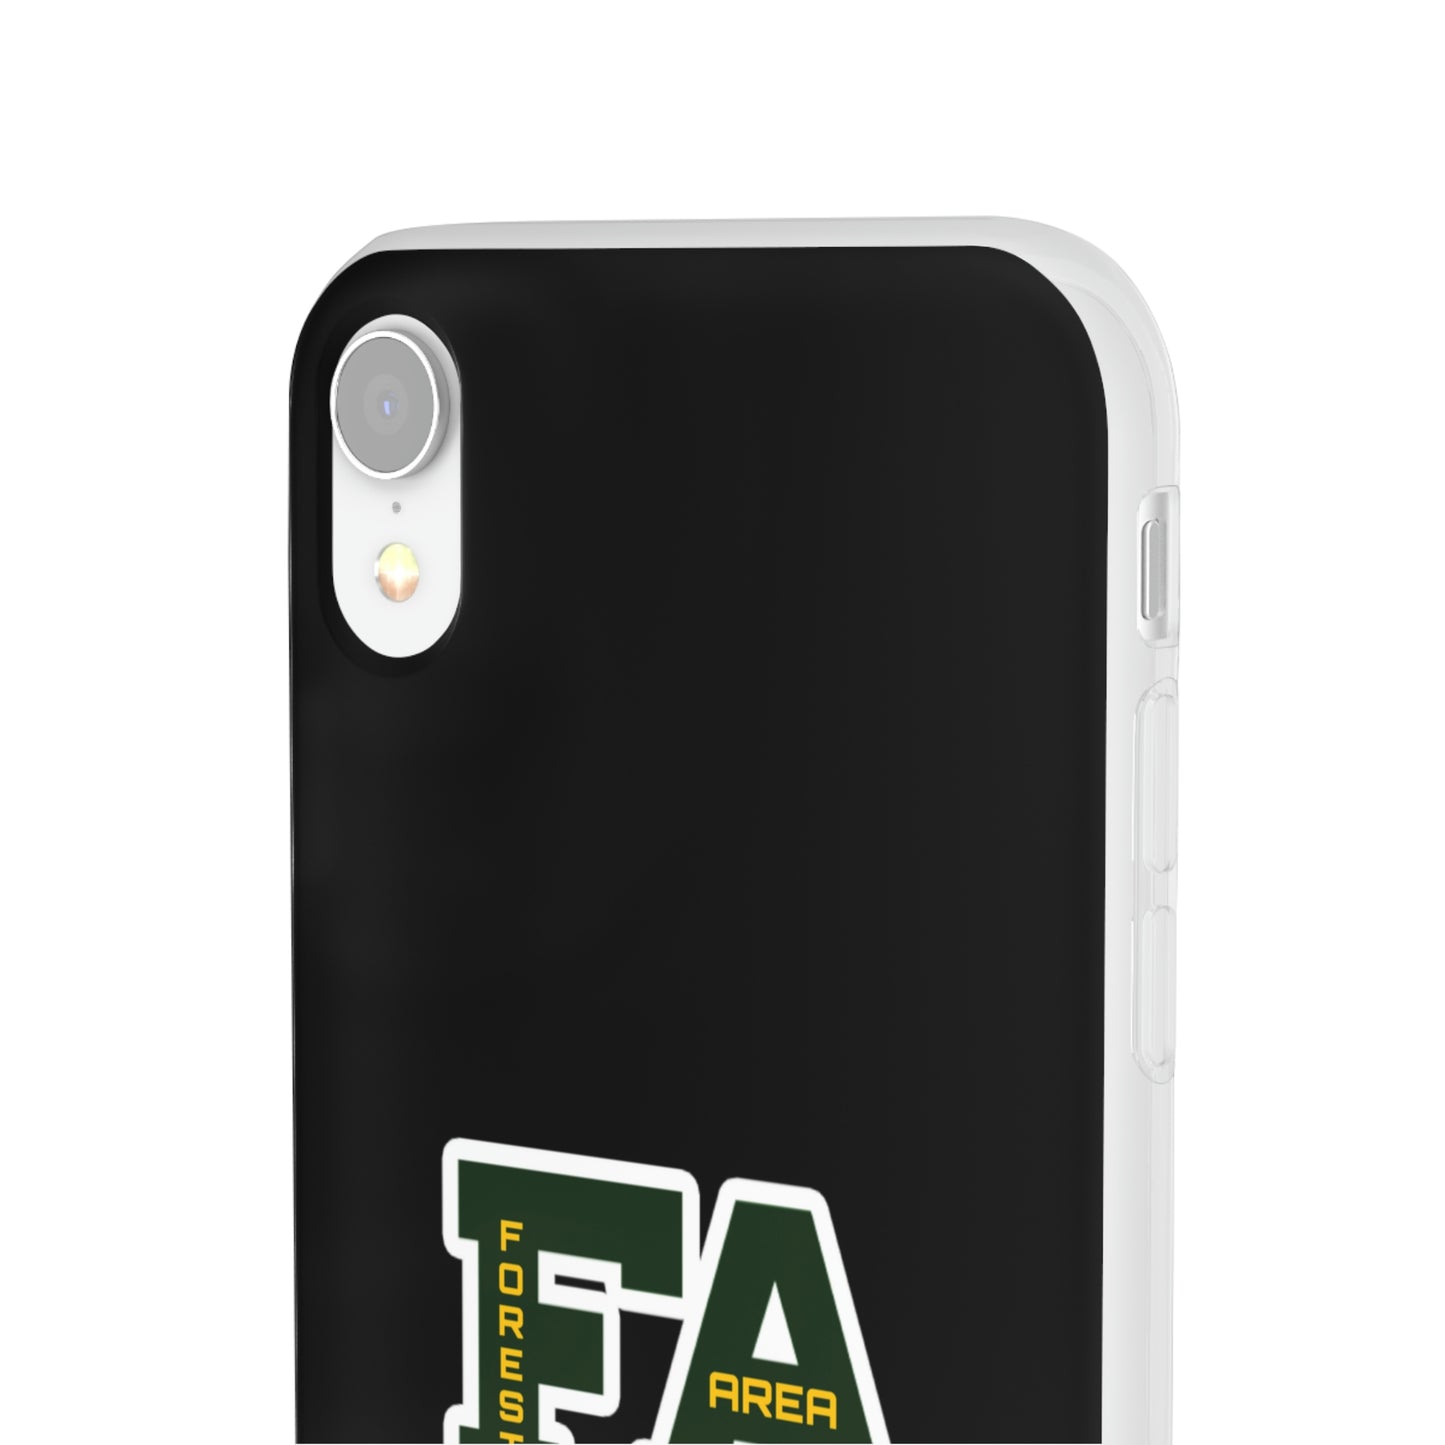 Black Flexi Case Logo #2 *28 Phone Models Item #F10-05D